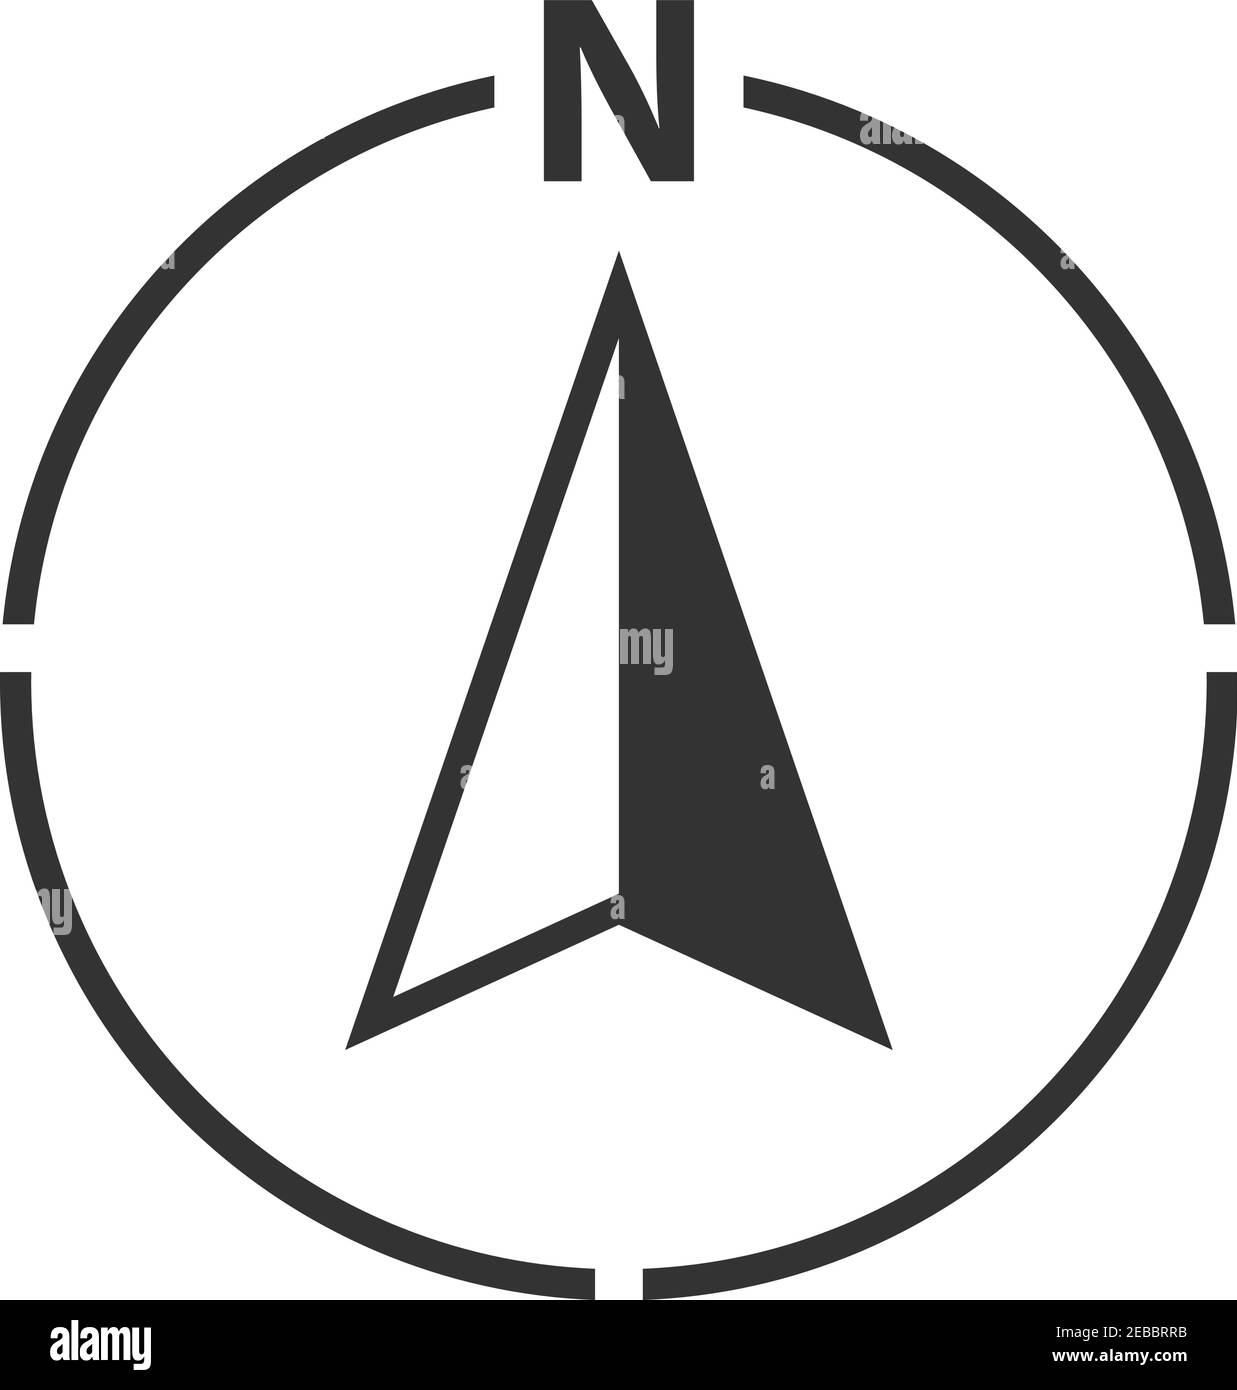 Flèche NORD dans le symbole d'orientation de la carte circulaire avec la lettre N. illustration vectorielle Illustration de Vecteur